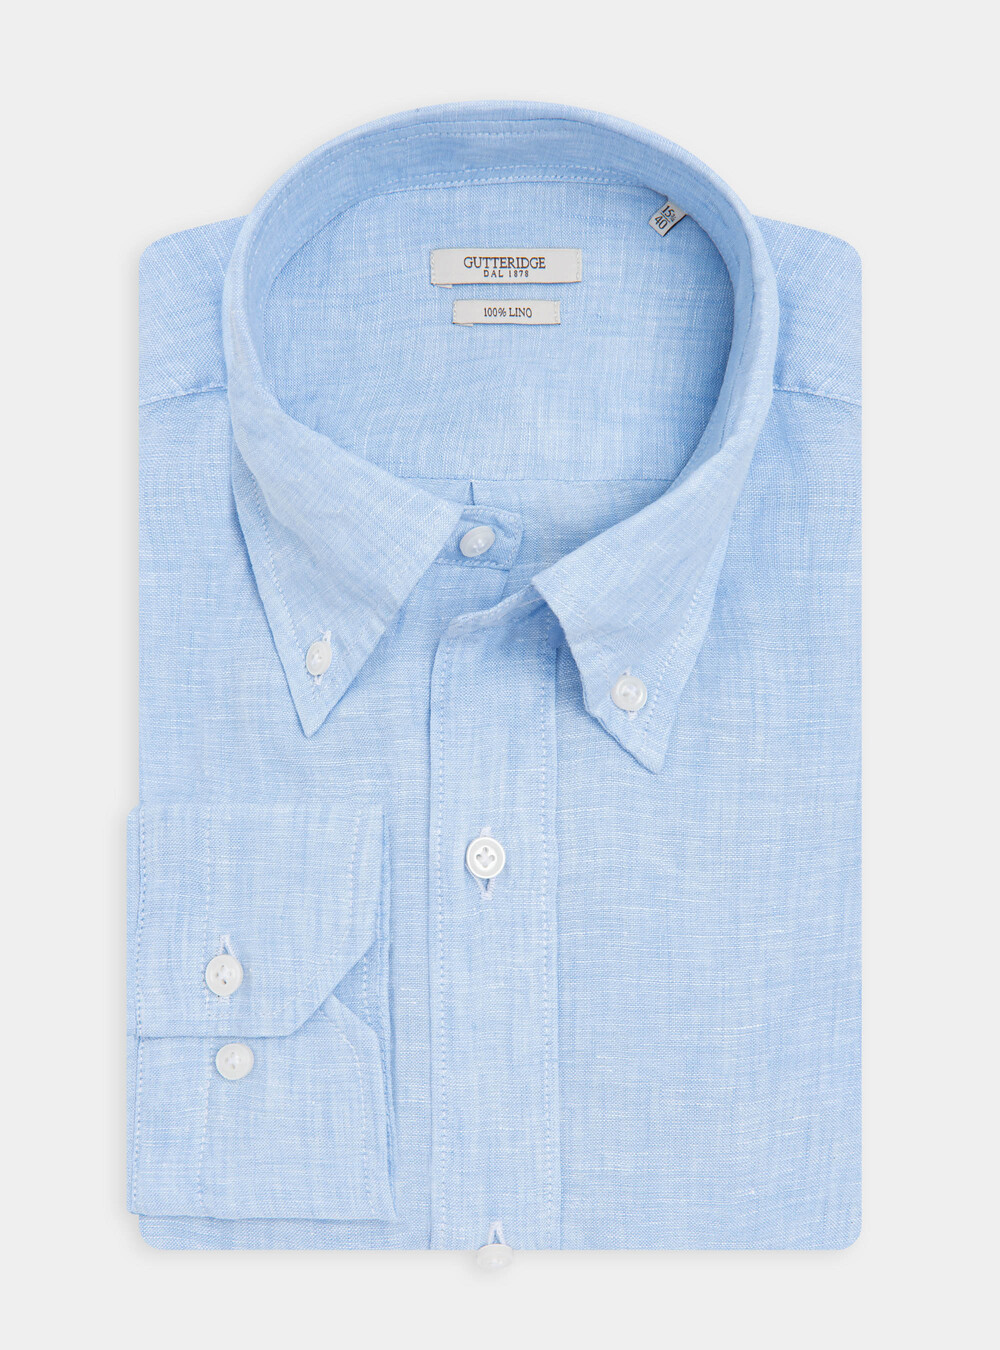 Camicia collo button down in puro lino | Gutteridge | Camicie Uomo